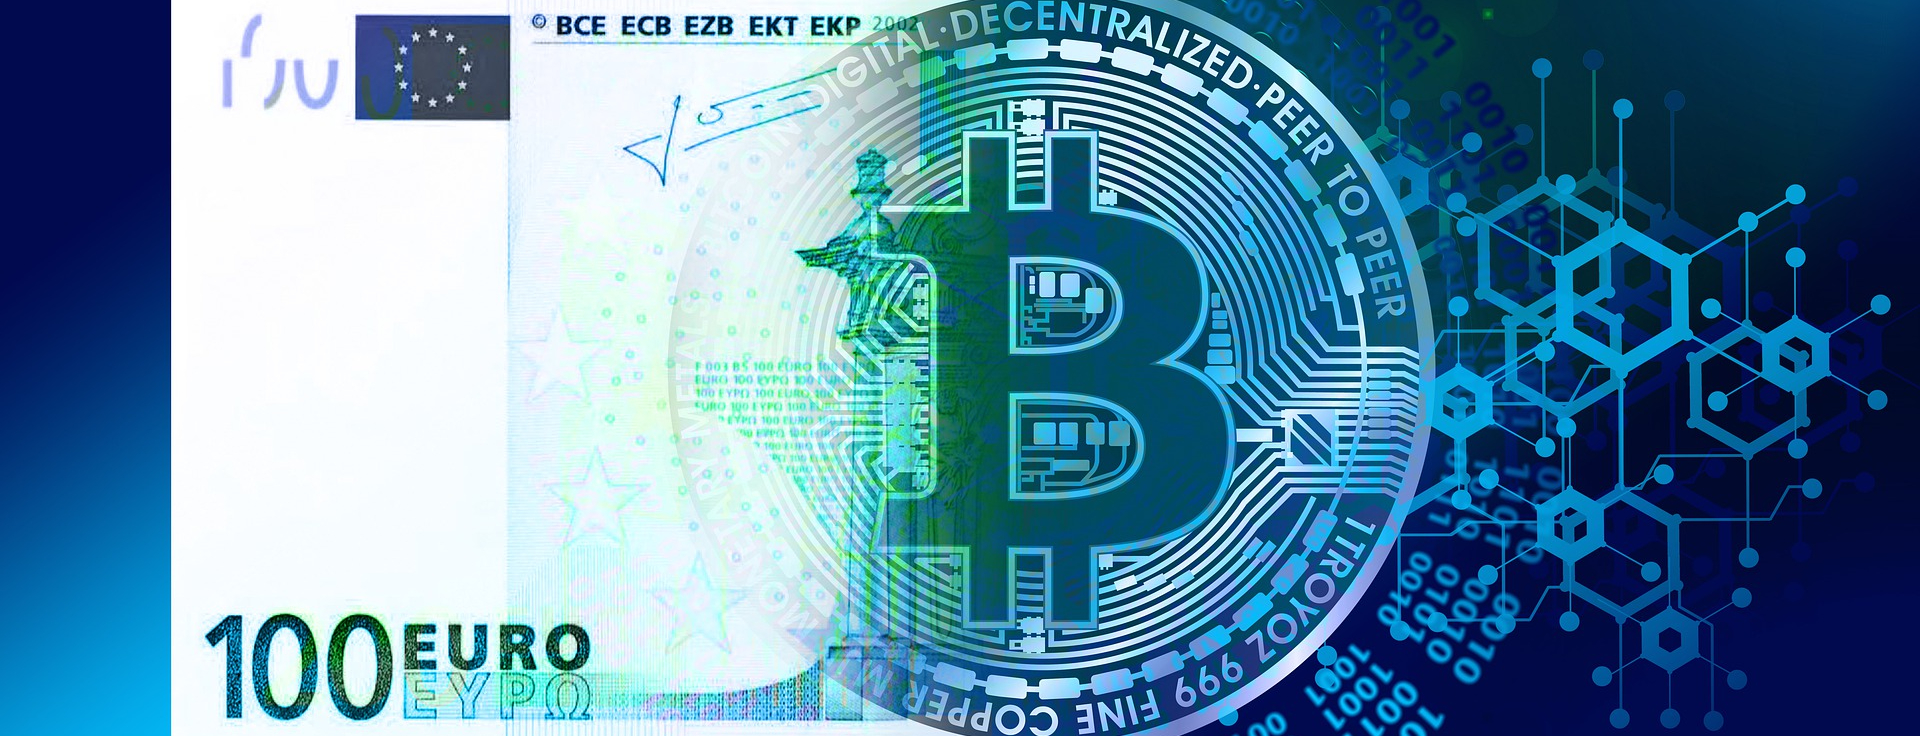 Blogg: Euro och Bitcoin som monetära system